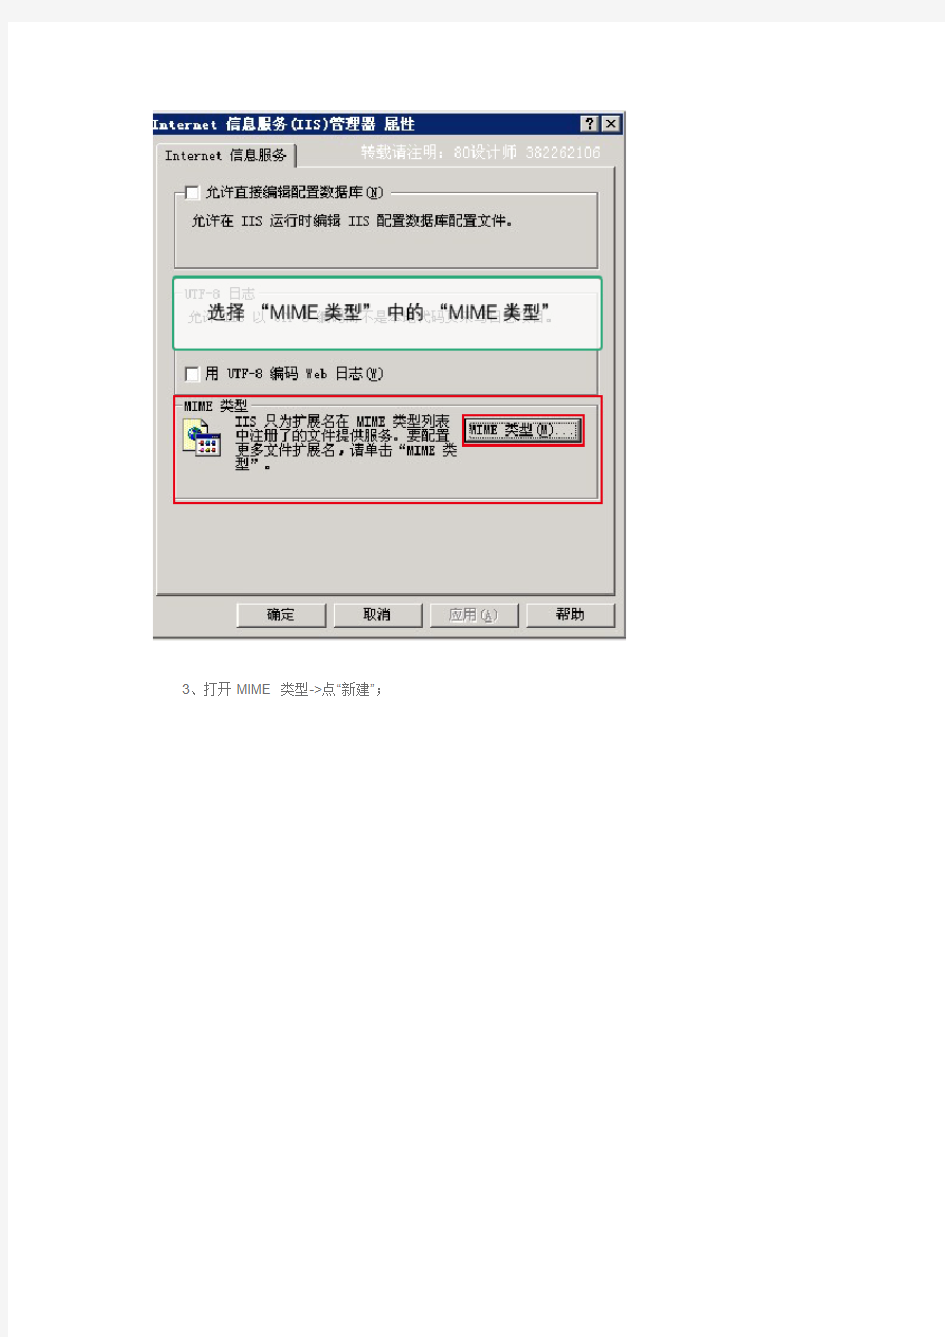 解决Win2003 IIS无法访问到FLV文件